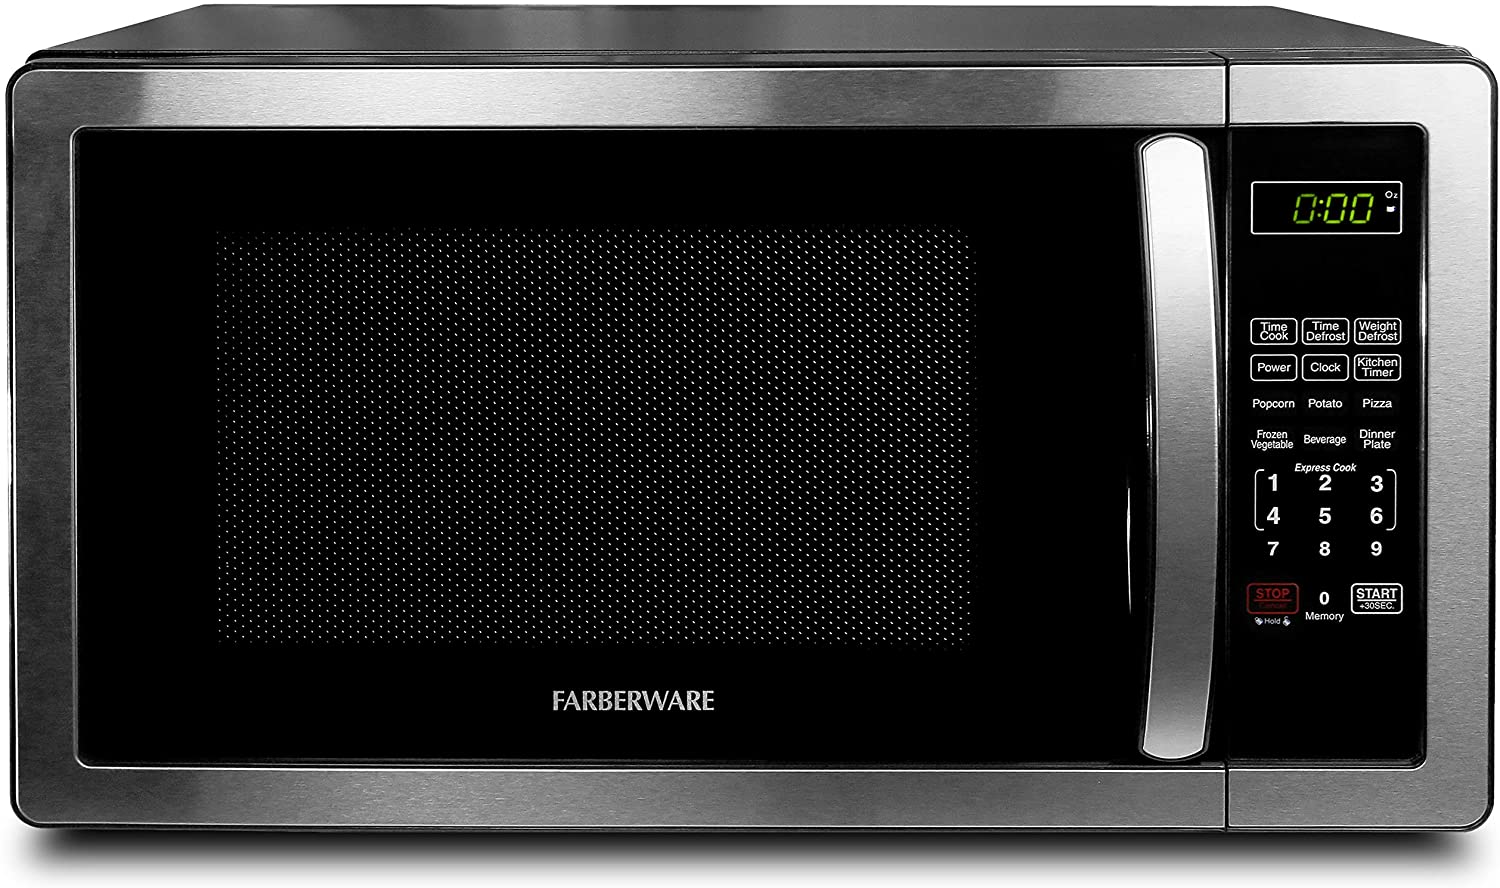 Farberware-Countertop-Microwave